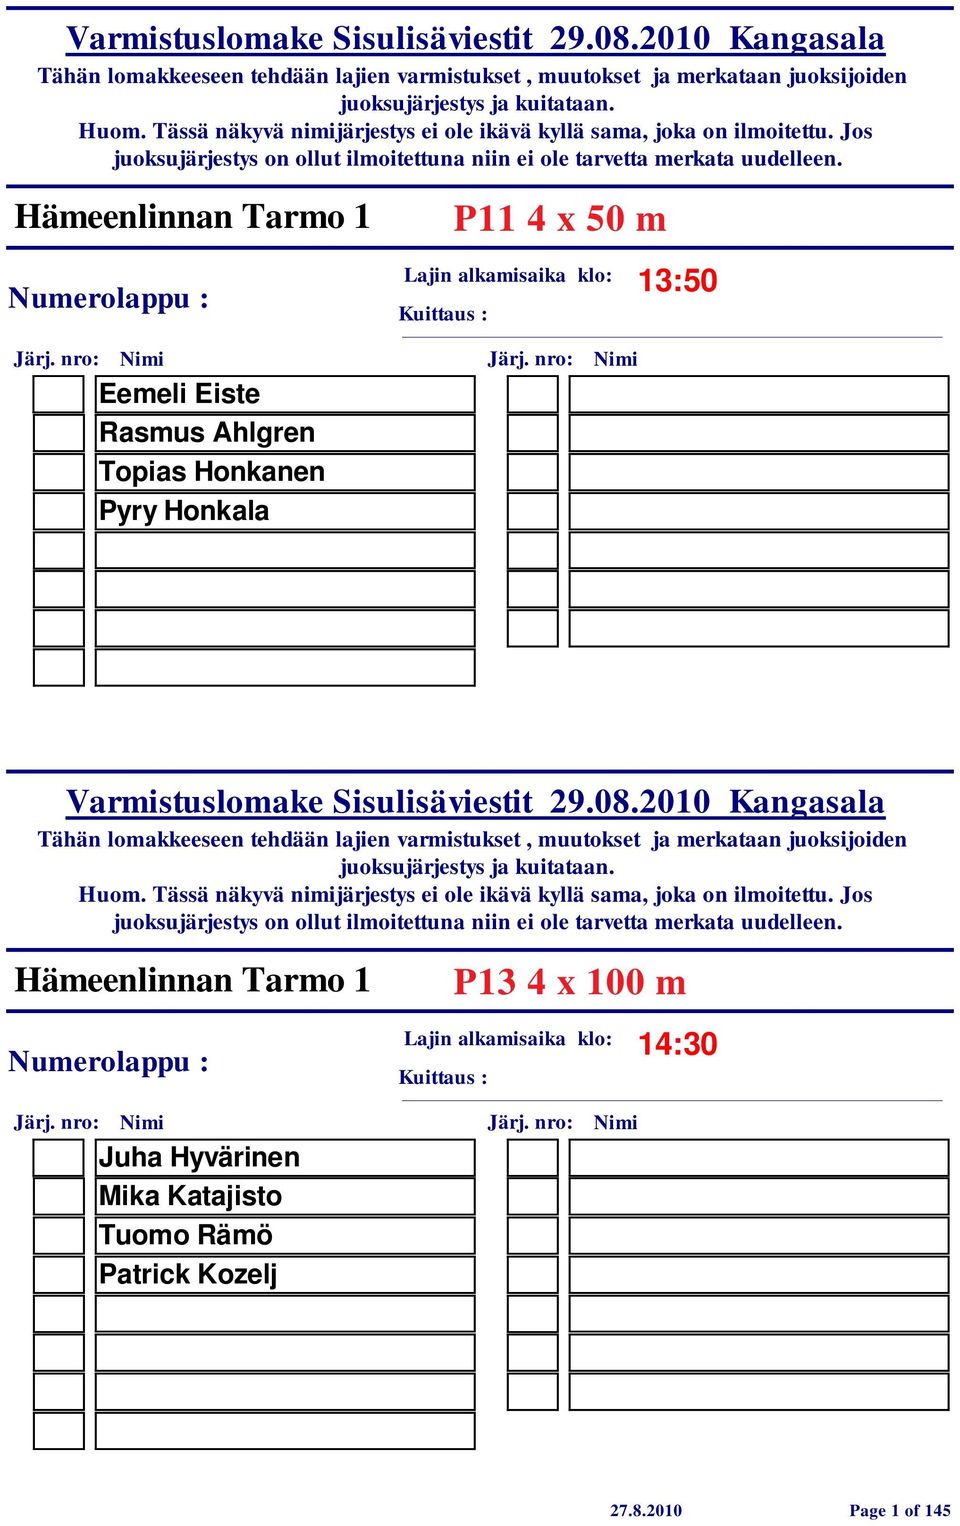 Hämeenlinnan Tarmo 1 P13 4 x 100 m 14:30 Juha